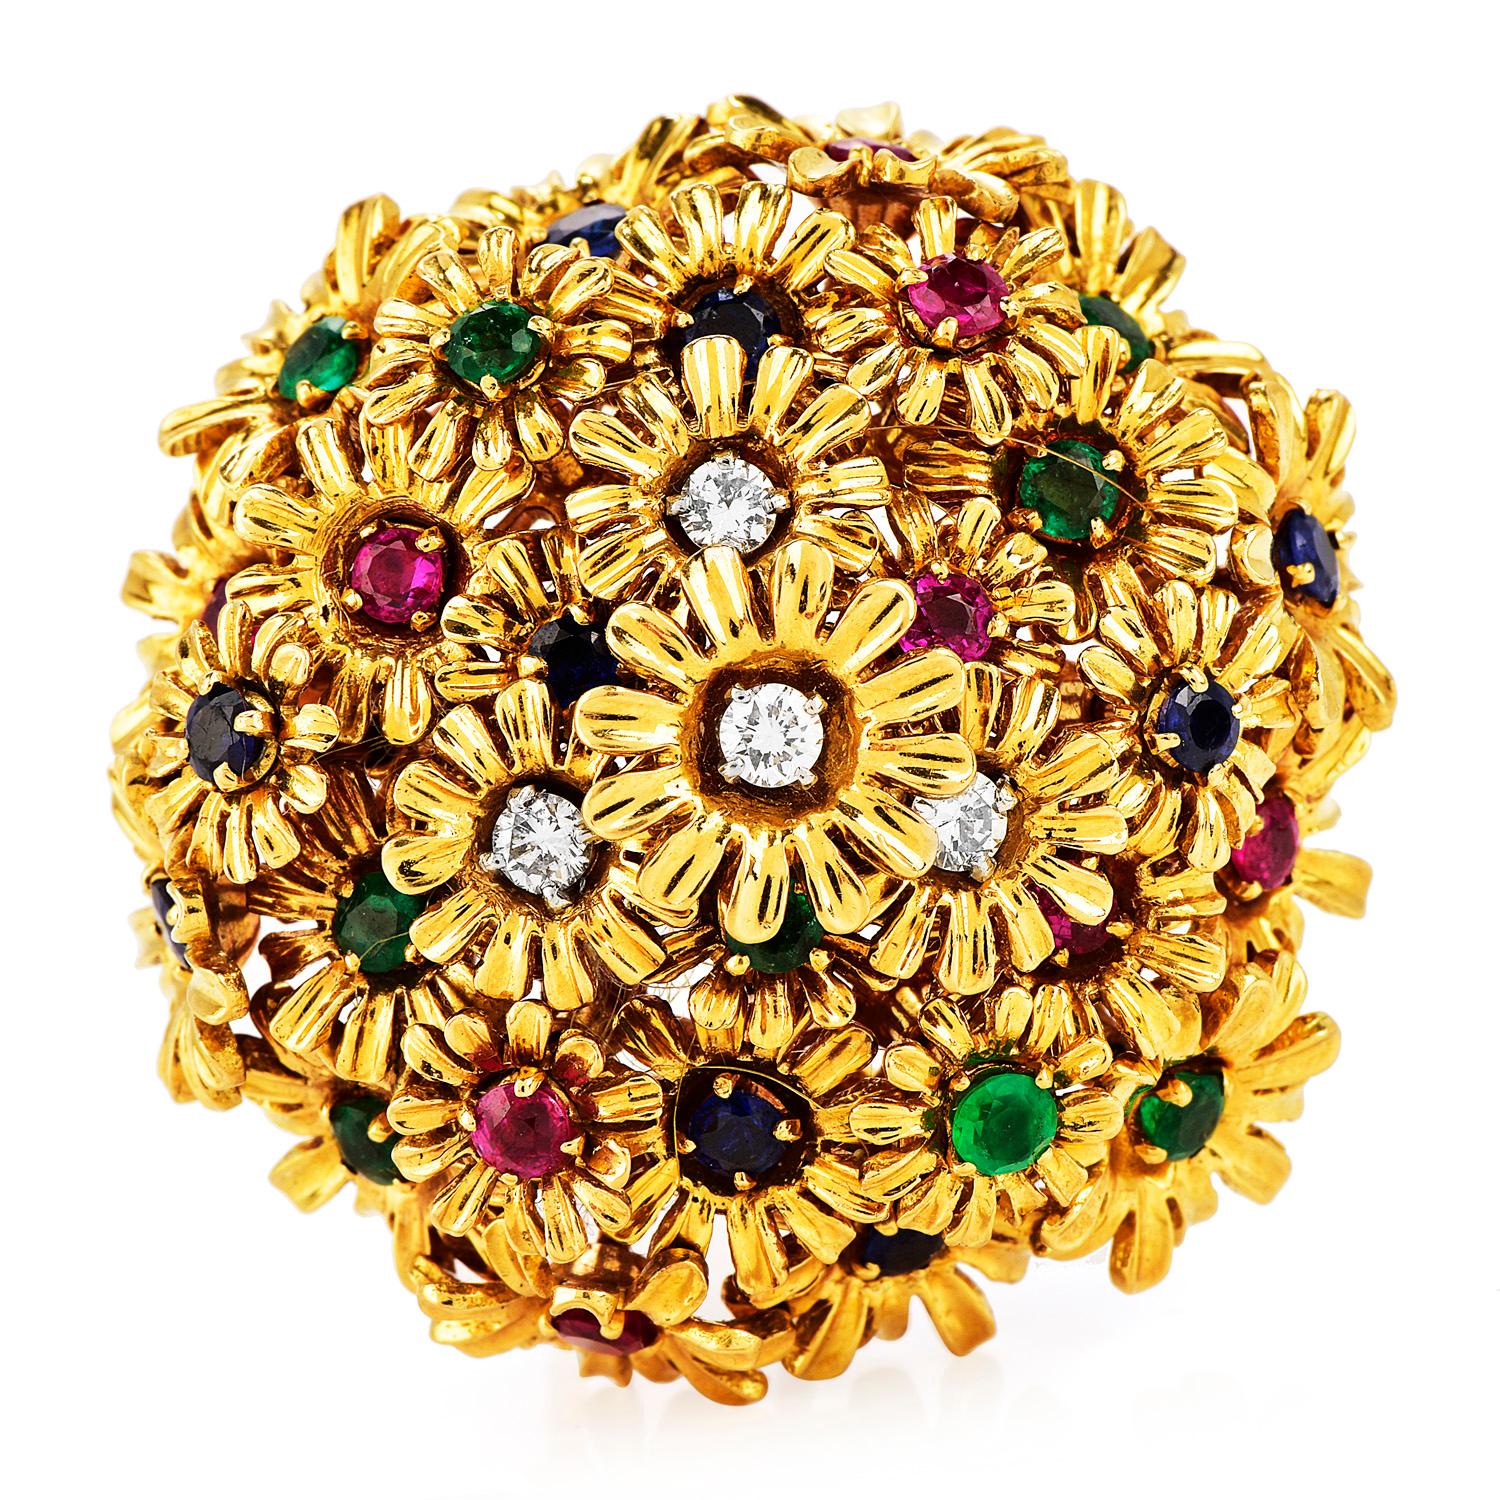 1960er Jahre Diamant Rubin Saphir Smaragd 18K Gold Floral Pin Brosche

Sehen Sie das Leben in lebendigen Farben mit dieser exquisiten 1960er Diamant-, Rubin-, Saphir- und Smaragd-Pin-Brosche

mit einem ungefähren Gesamtgewicht von 34,2